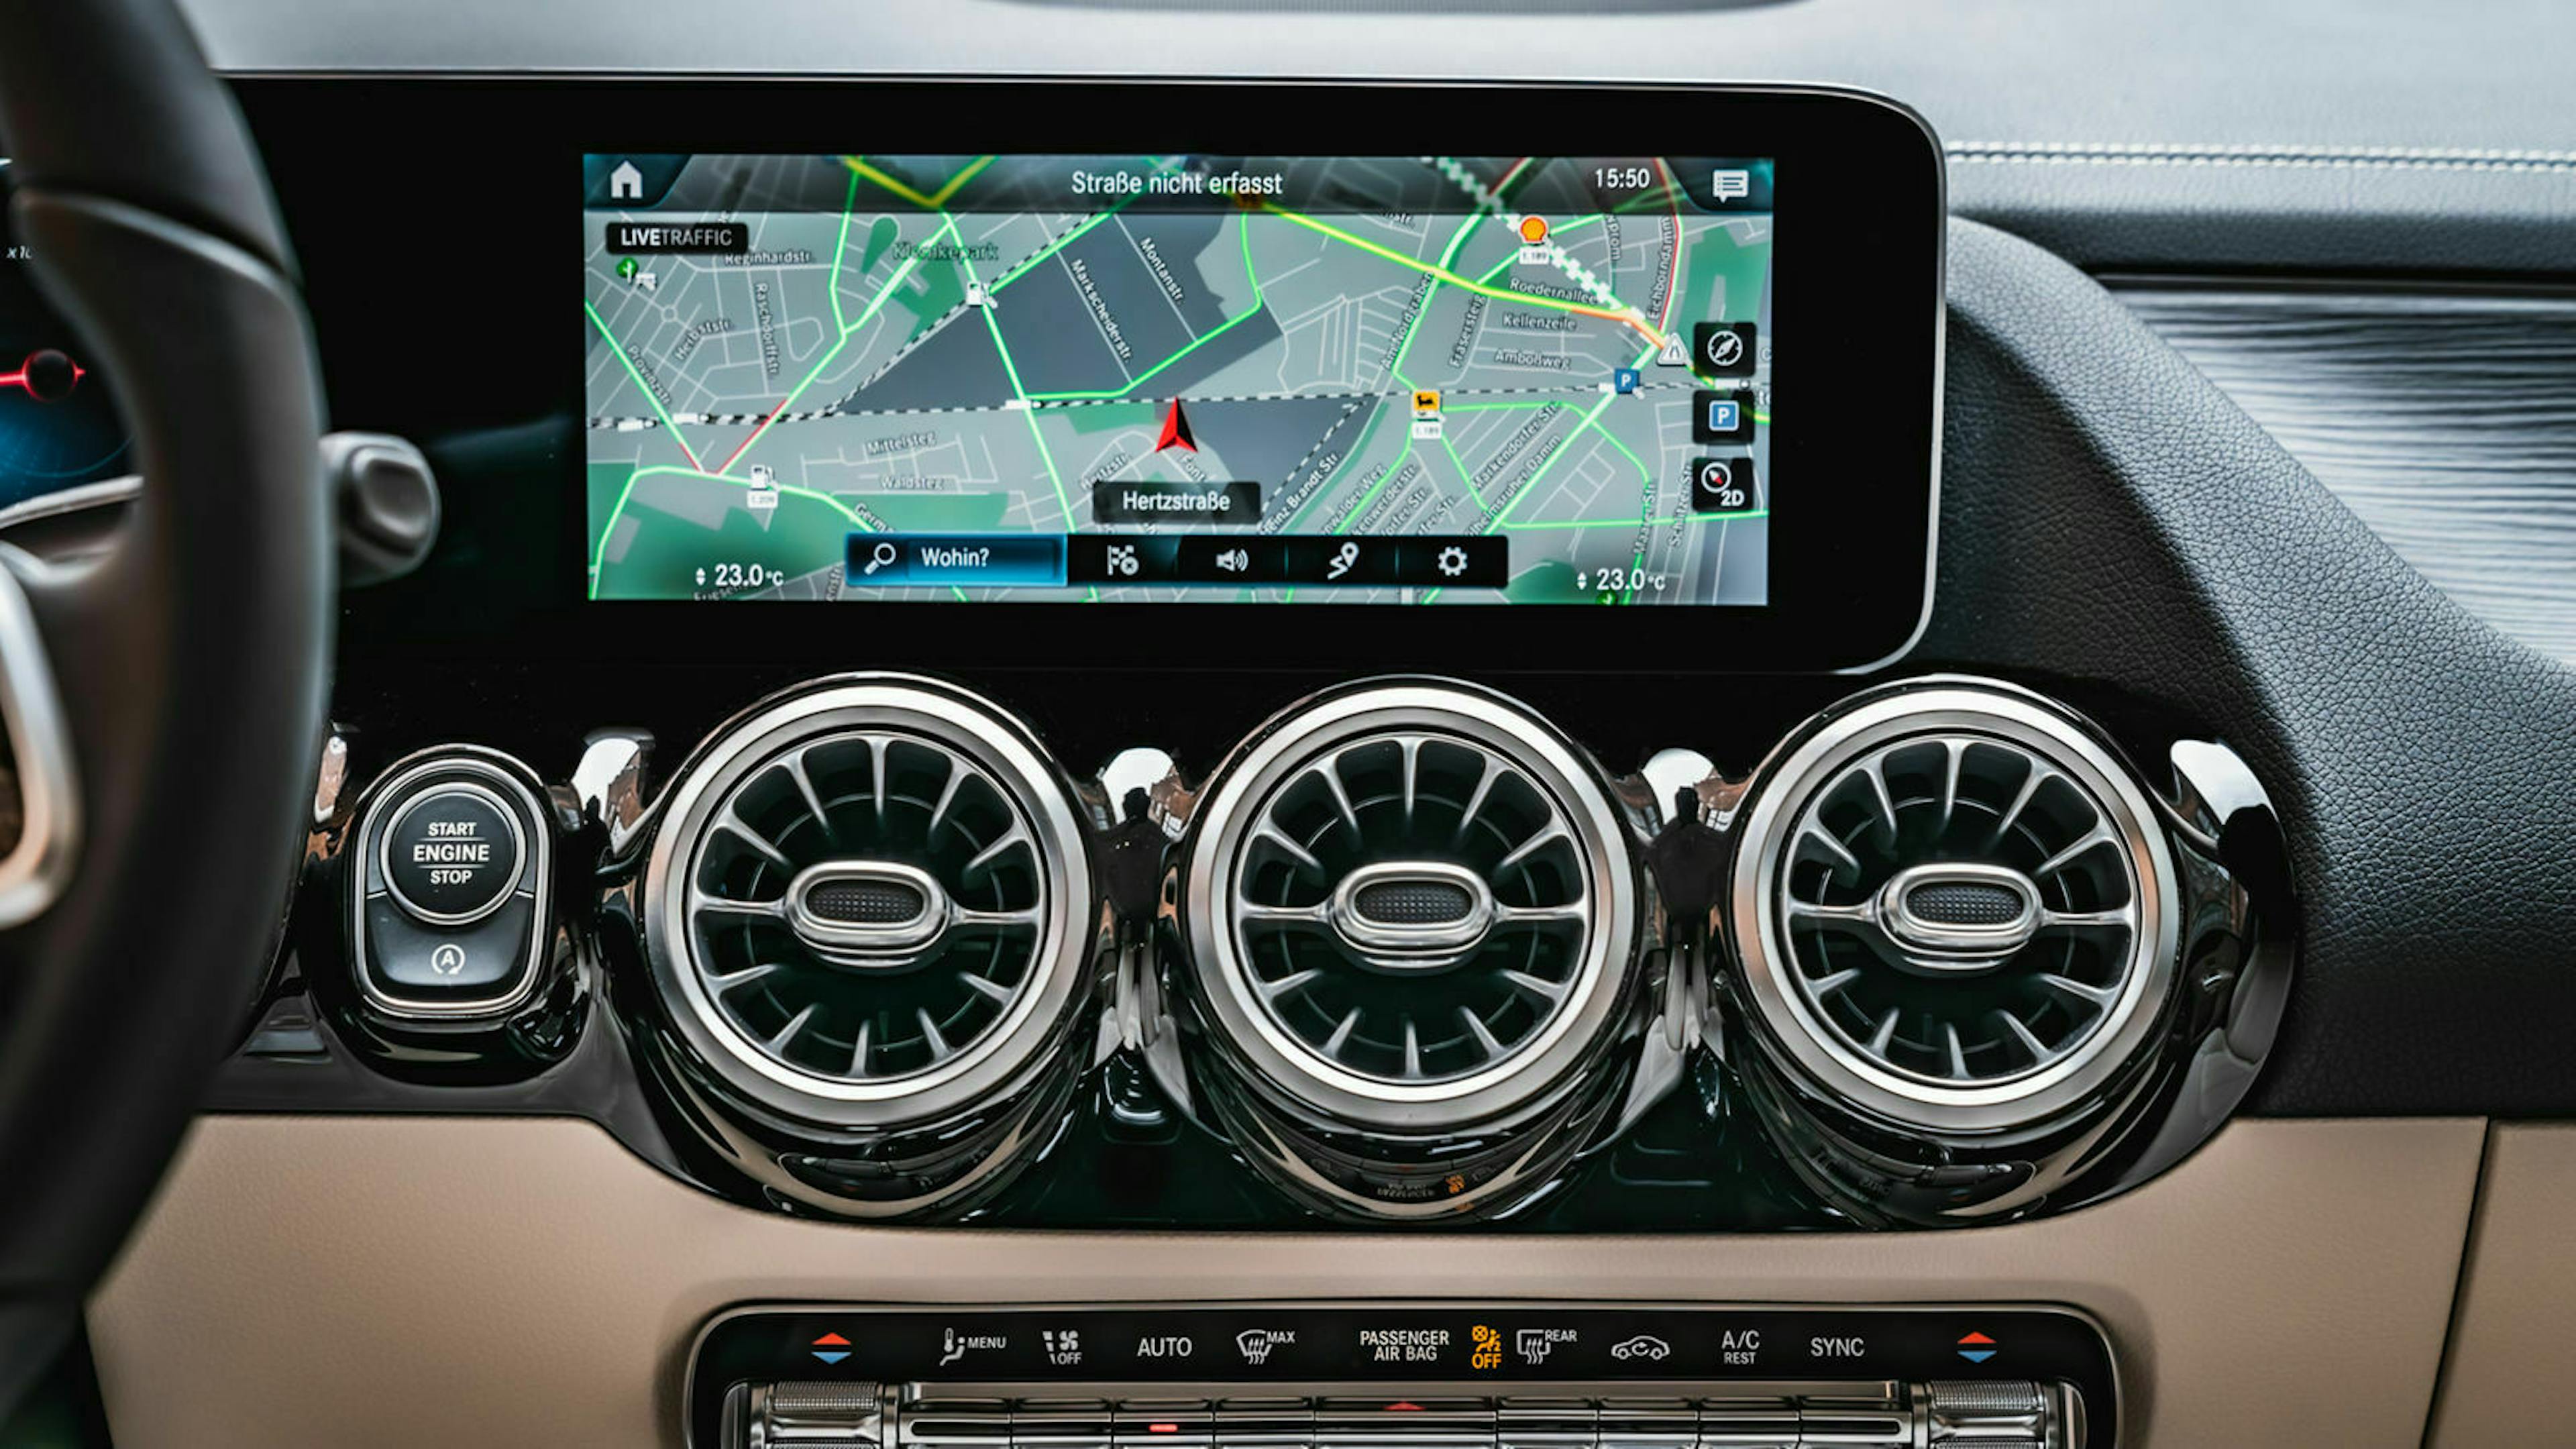 Zu sehen ist der Infotainment-Bildschirm des Mercedes GLA 200